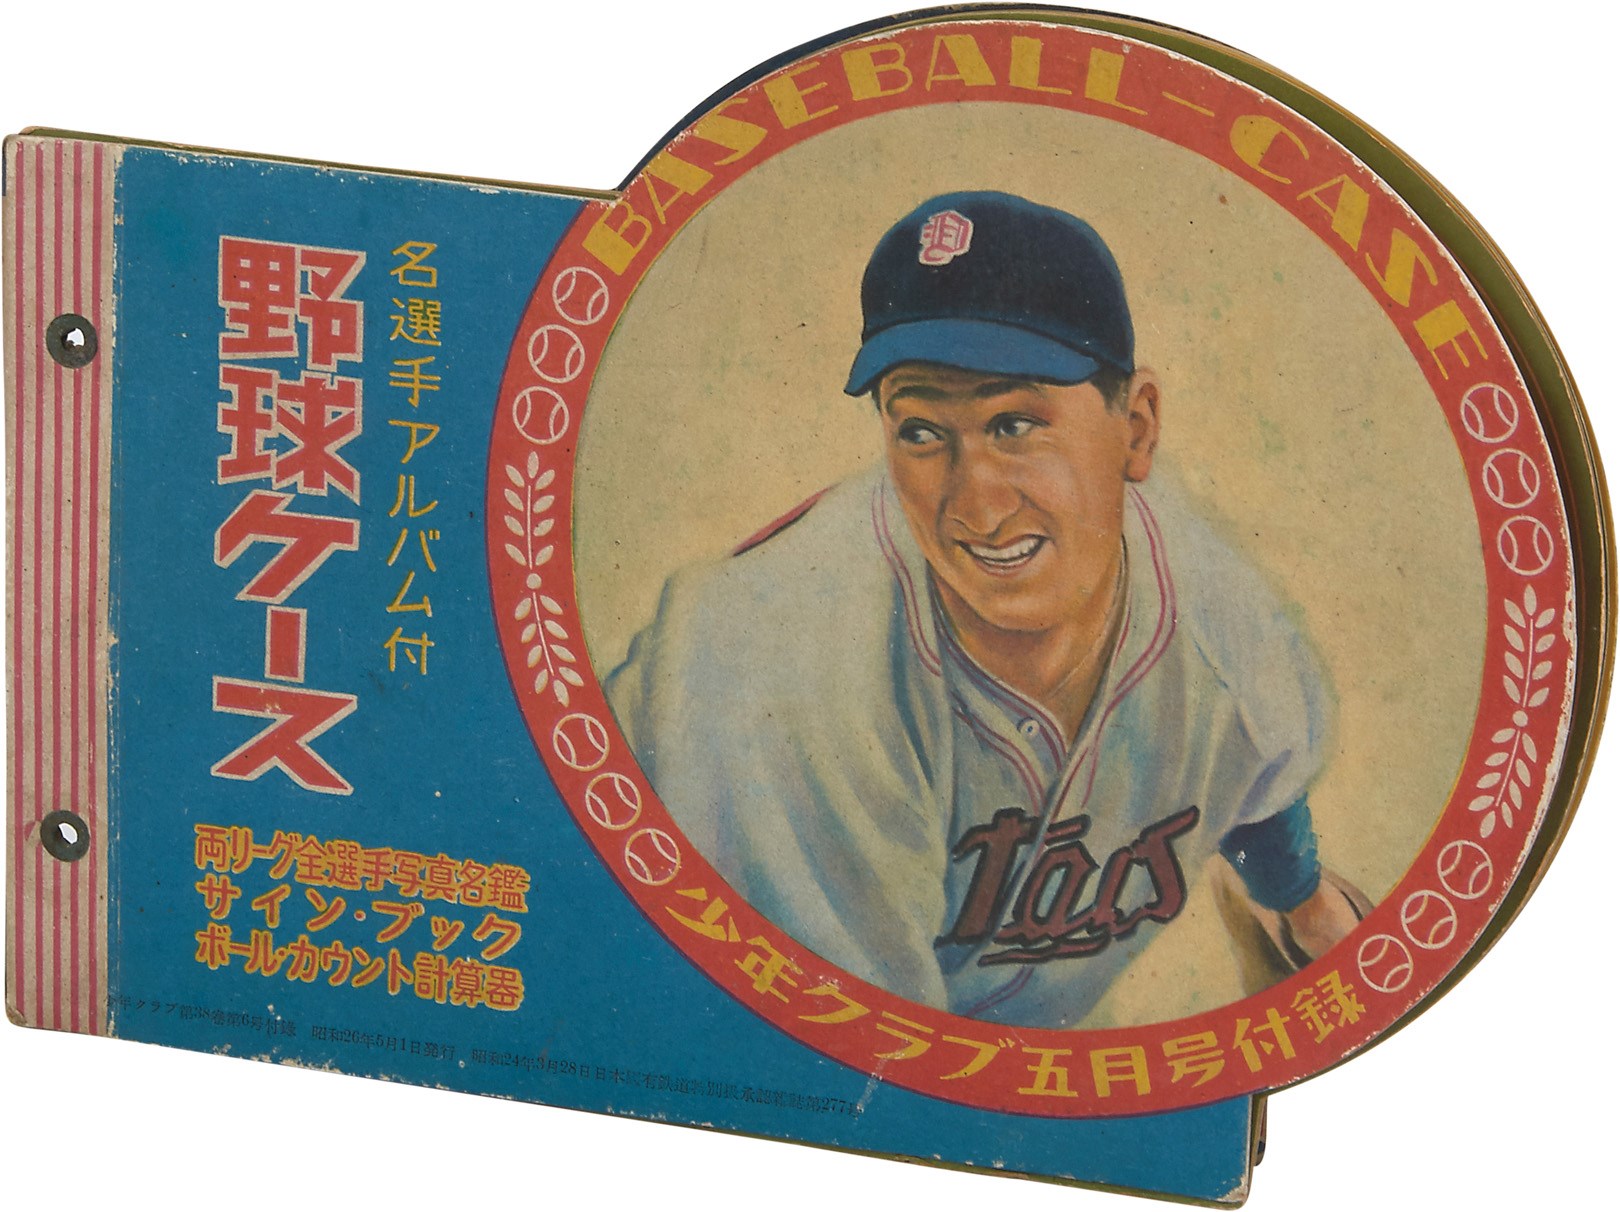 - 1951 Japanese "All-Star" Baseball Pin-up Book